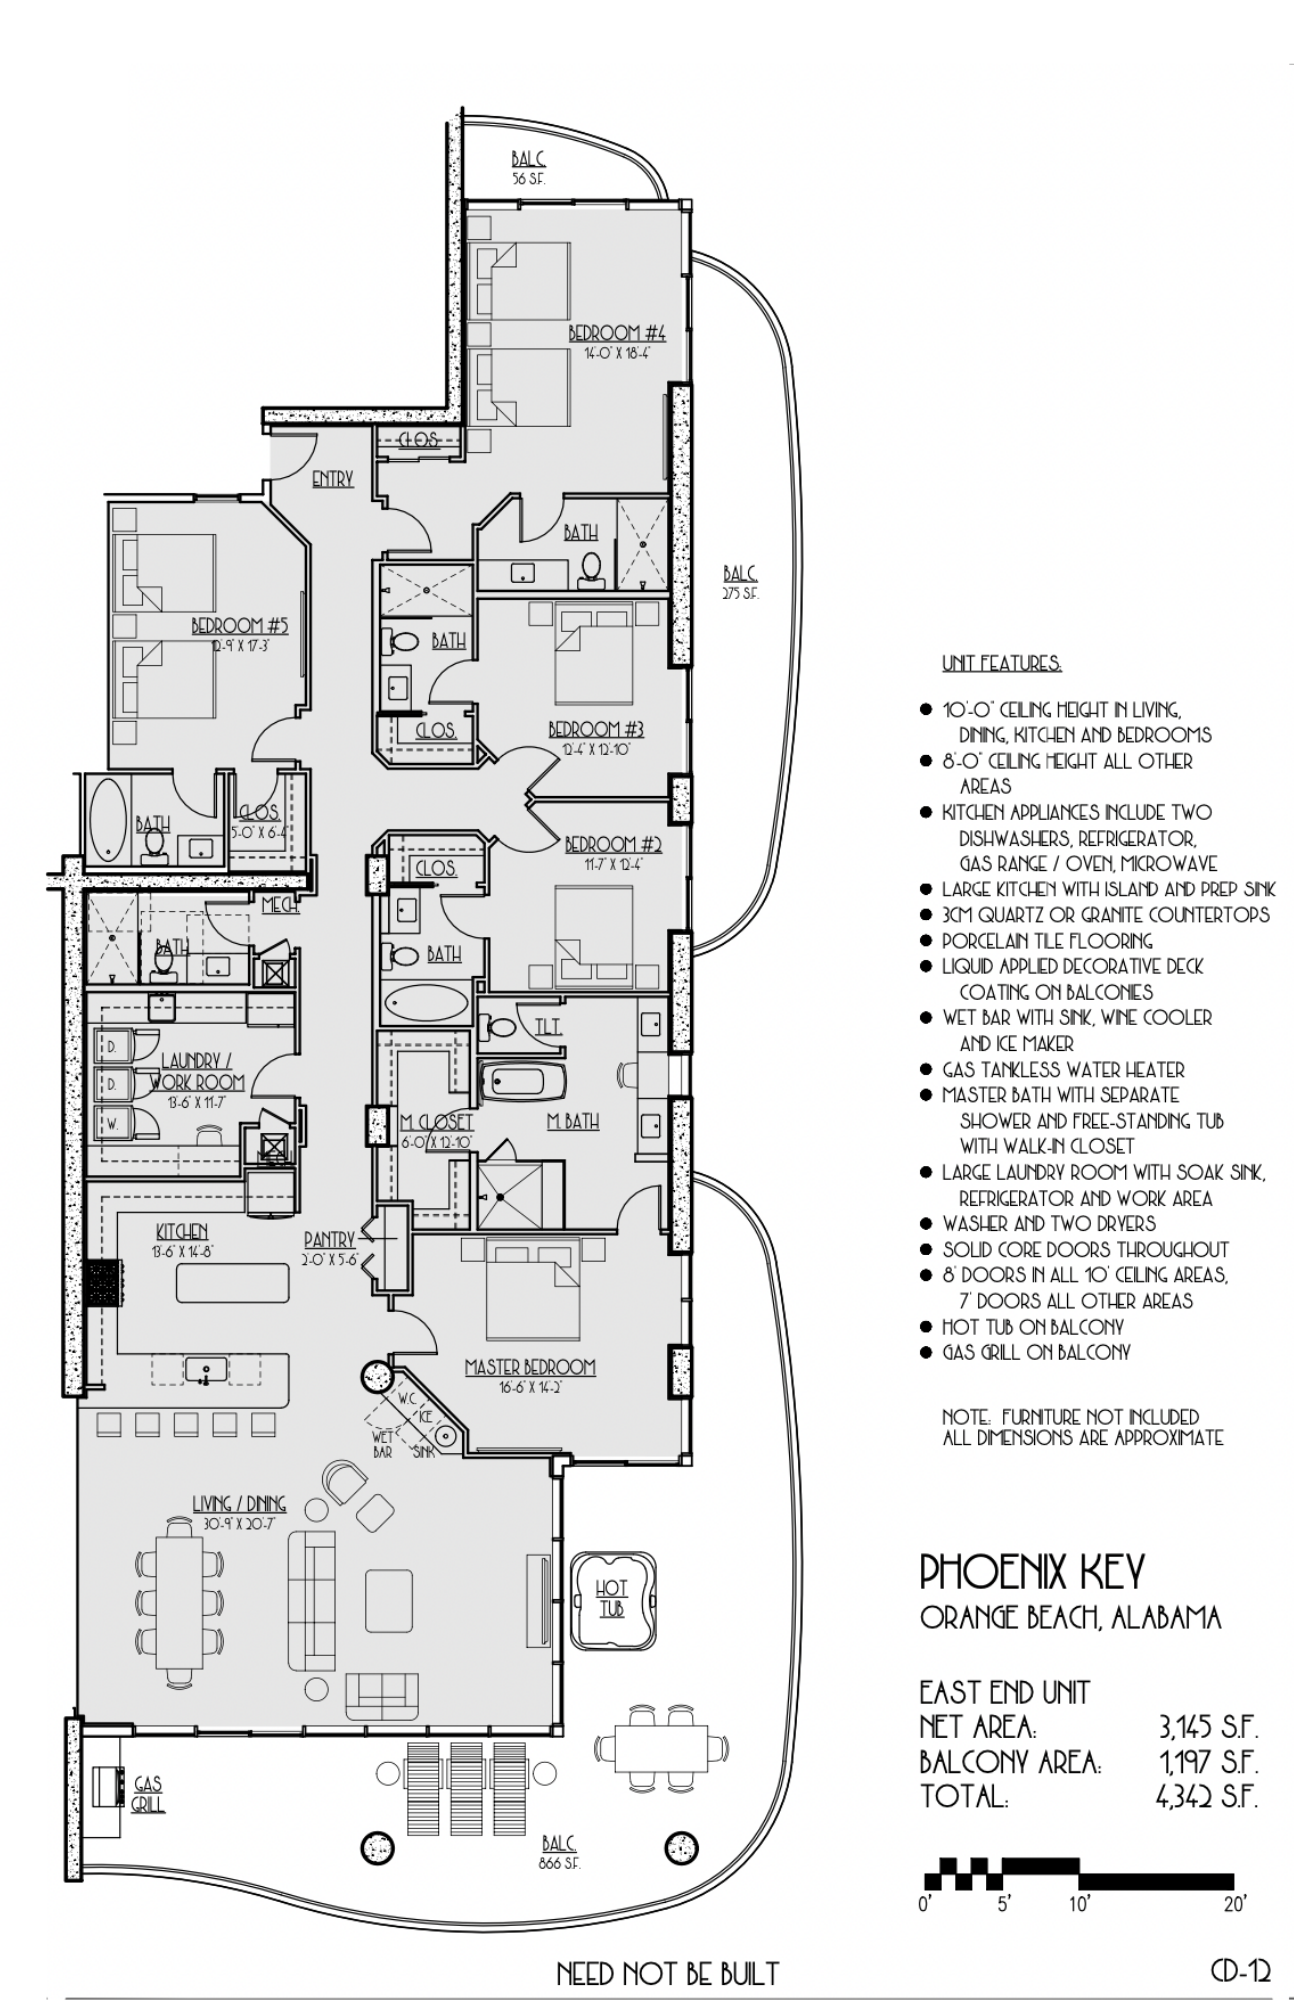 Phoenix-Key-East-End-Unit-Floorplans